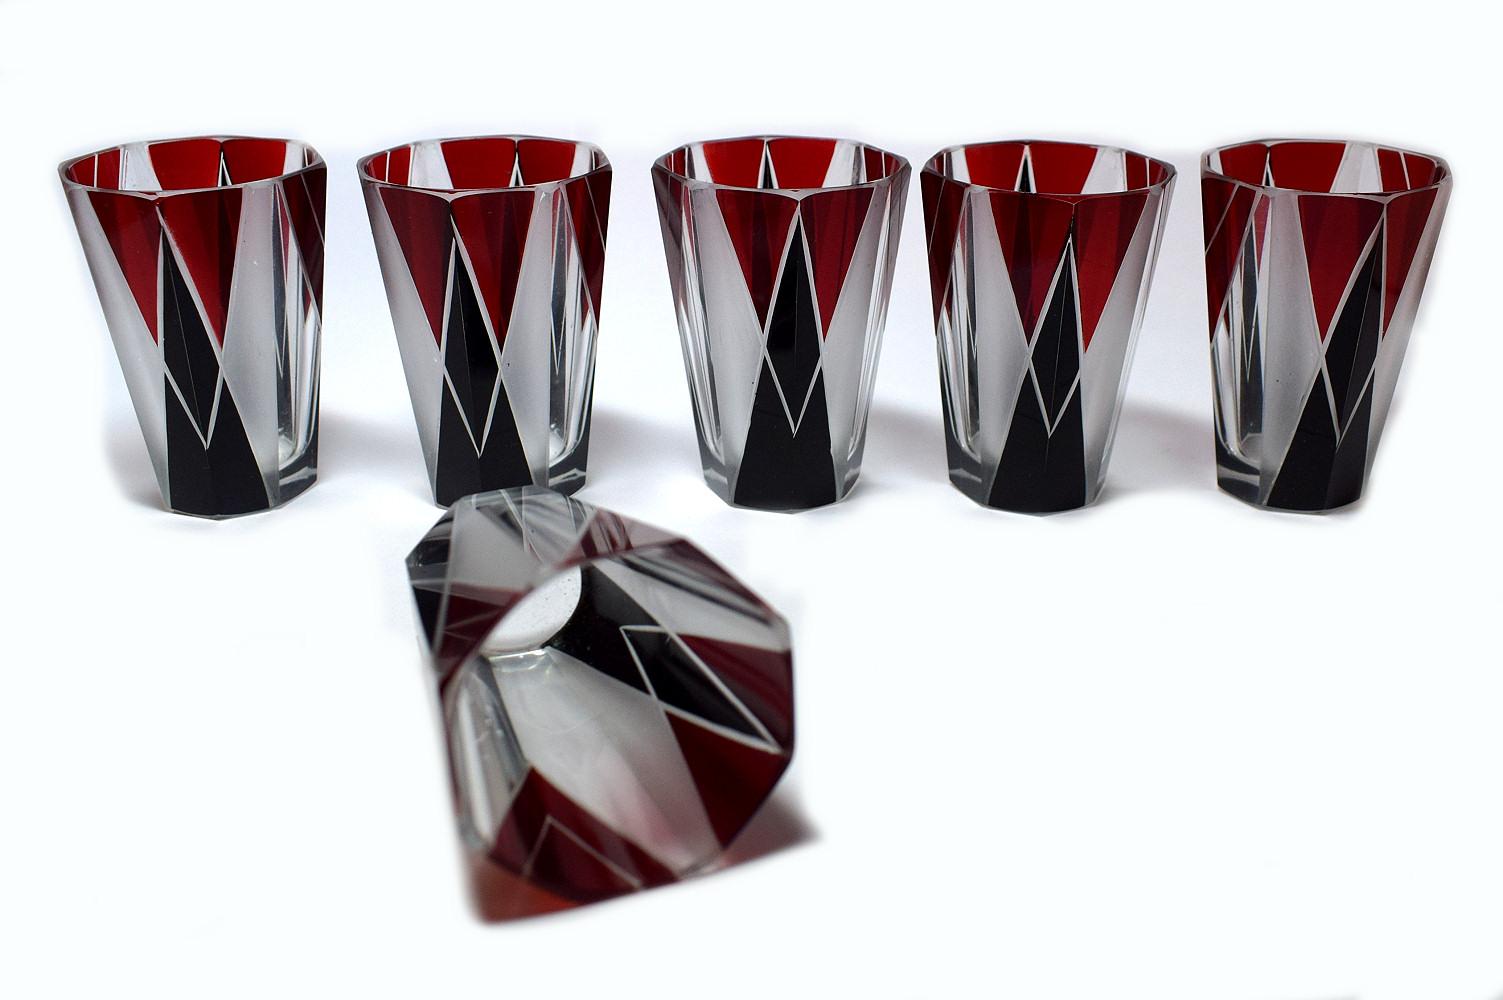 Tschechische Karaffe im Art déco-Stil der 1930er Jahre aus Klarglas mit schwarzem und tiefrotem Emaildekor. Die Karaffe wird mit sechs passenden Gläsern geliefert, die alle stark emailliert und mit geometrischem Dekor versehen sind. Der Deckel ist